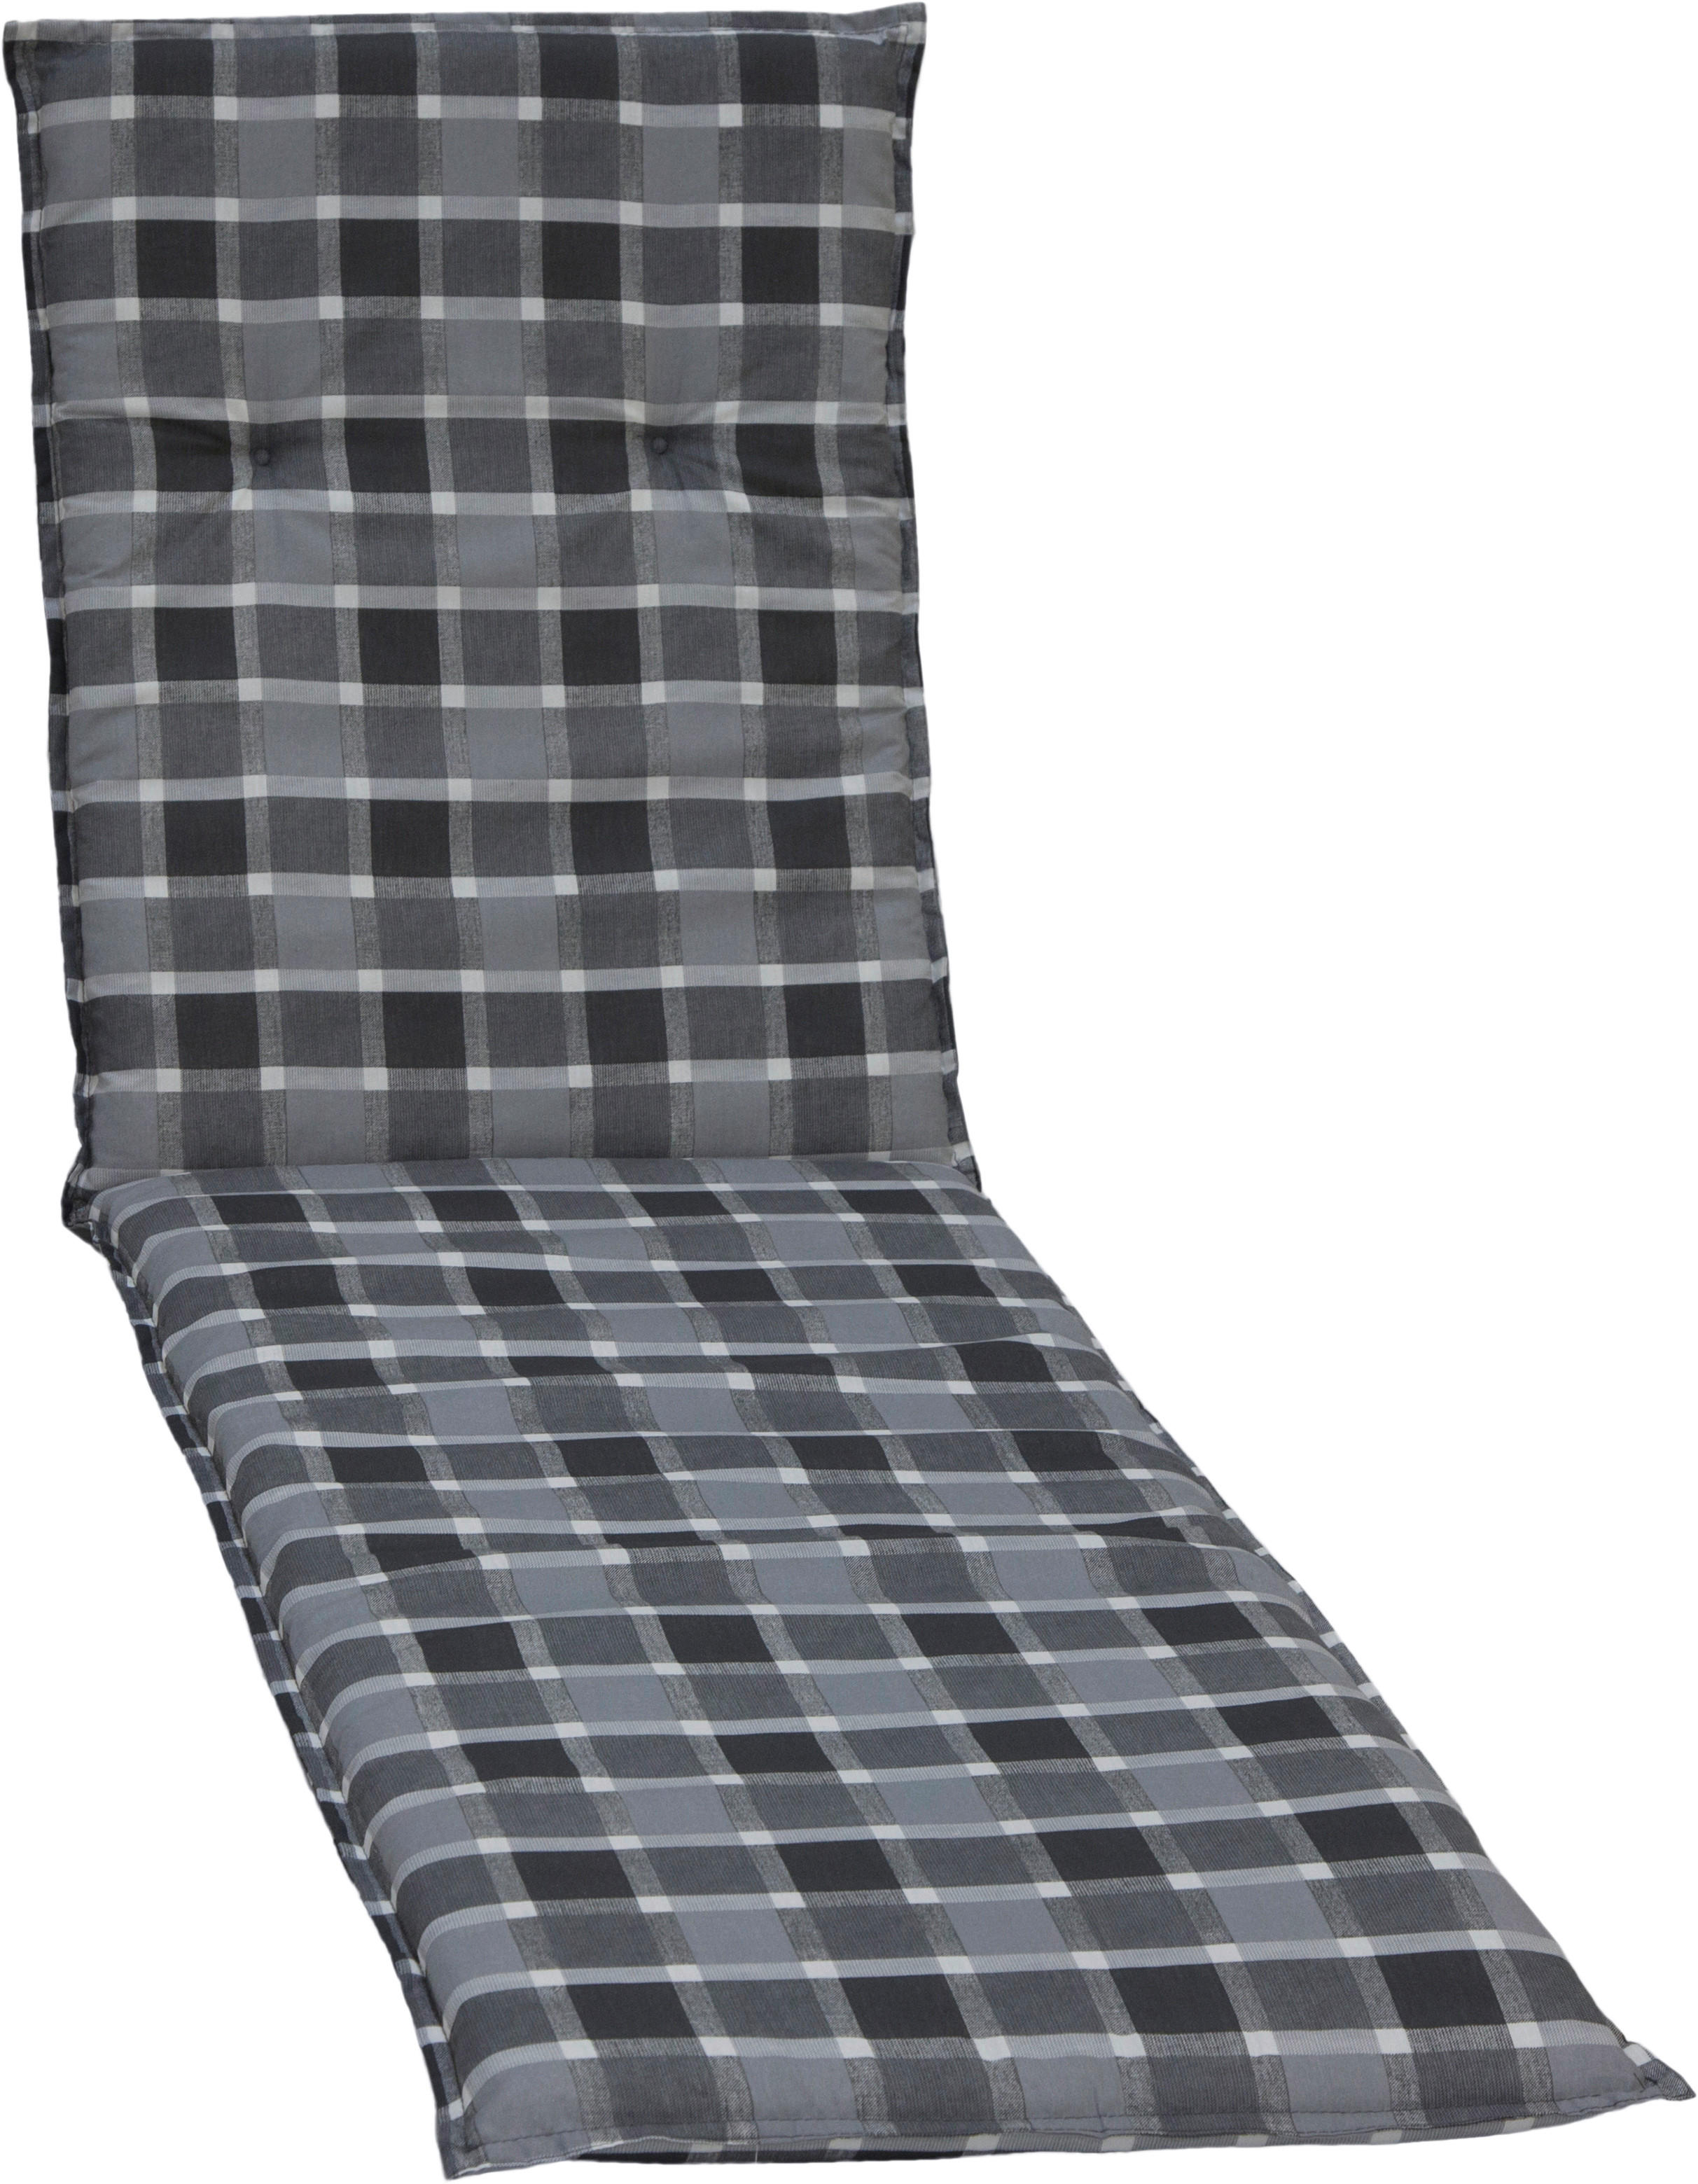 LIEGENAUFLAGE Grau Karo  - Grau, Basics, Textil (193/60/6cm)